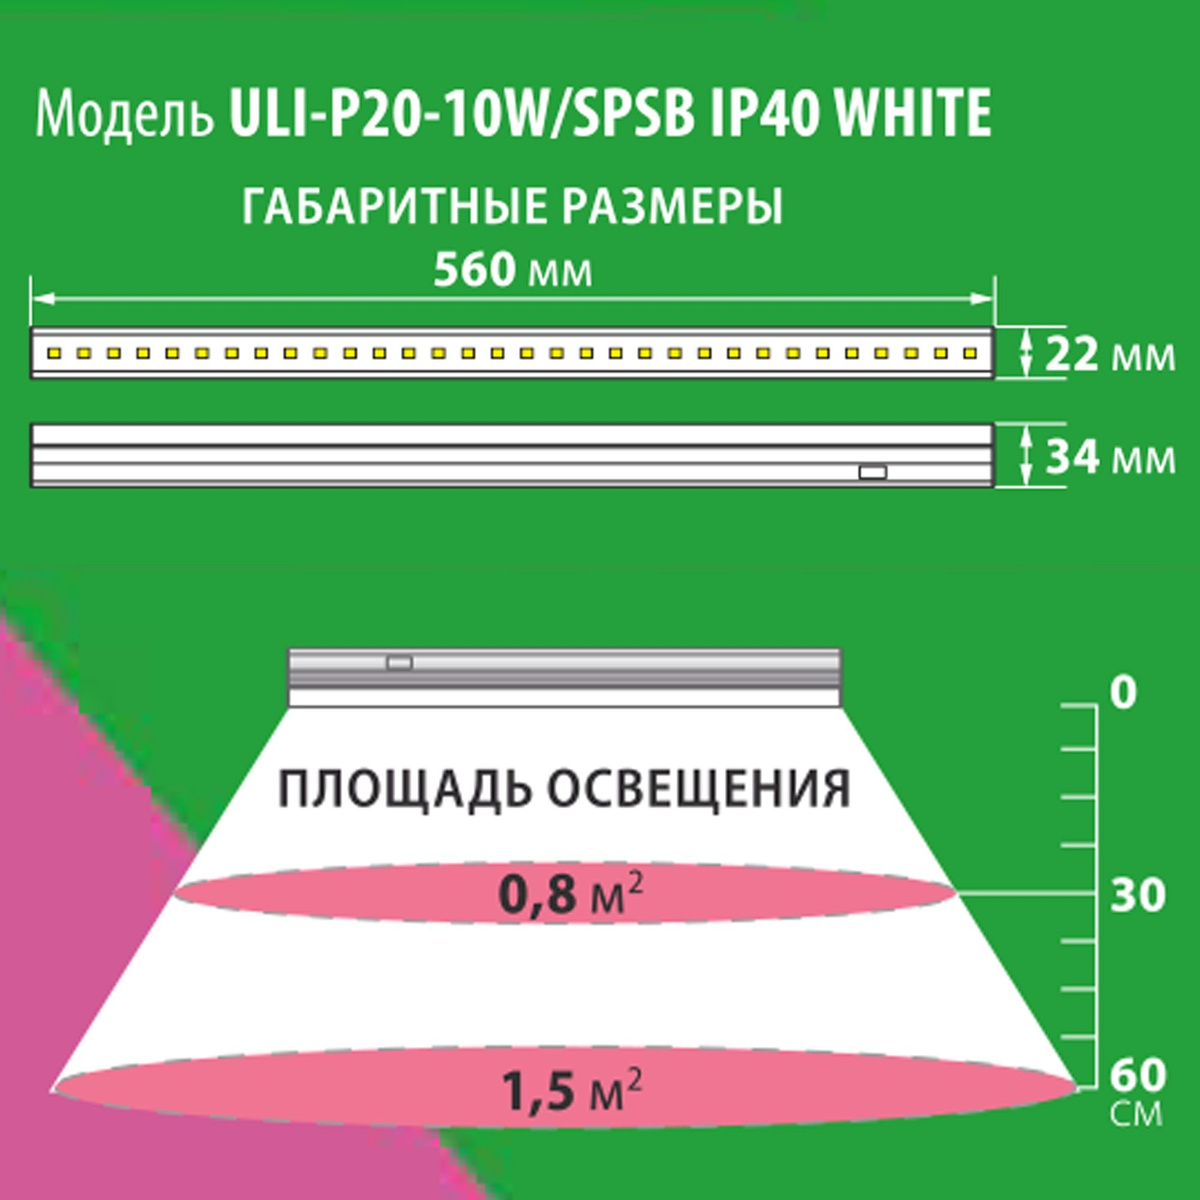 Универсальная металлическая подставка UFP-G03S WHITE для линейных фитосветильников Uniel ULI-P длиной 570 мм. Прочный стальной каркас белого цвета выдерживает вес до 2-х кг (средний вес светильников до 300 гр). Дополнительные монтажные отверстия в стойках позволяют закрепить фитосветильник на высоте от 350 до 490 мм от поверхности. 